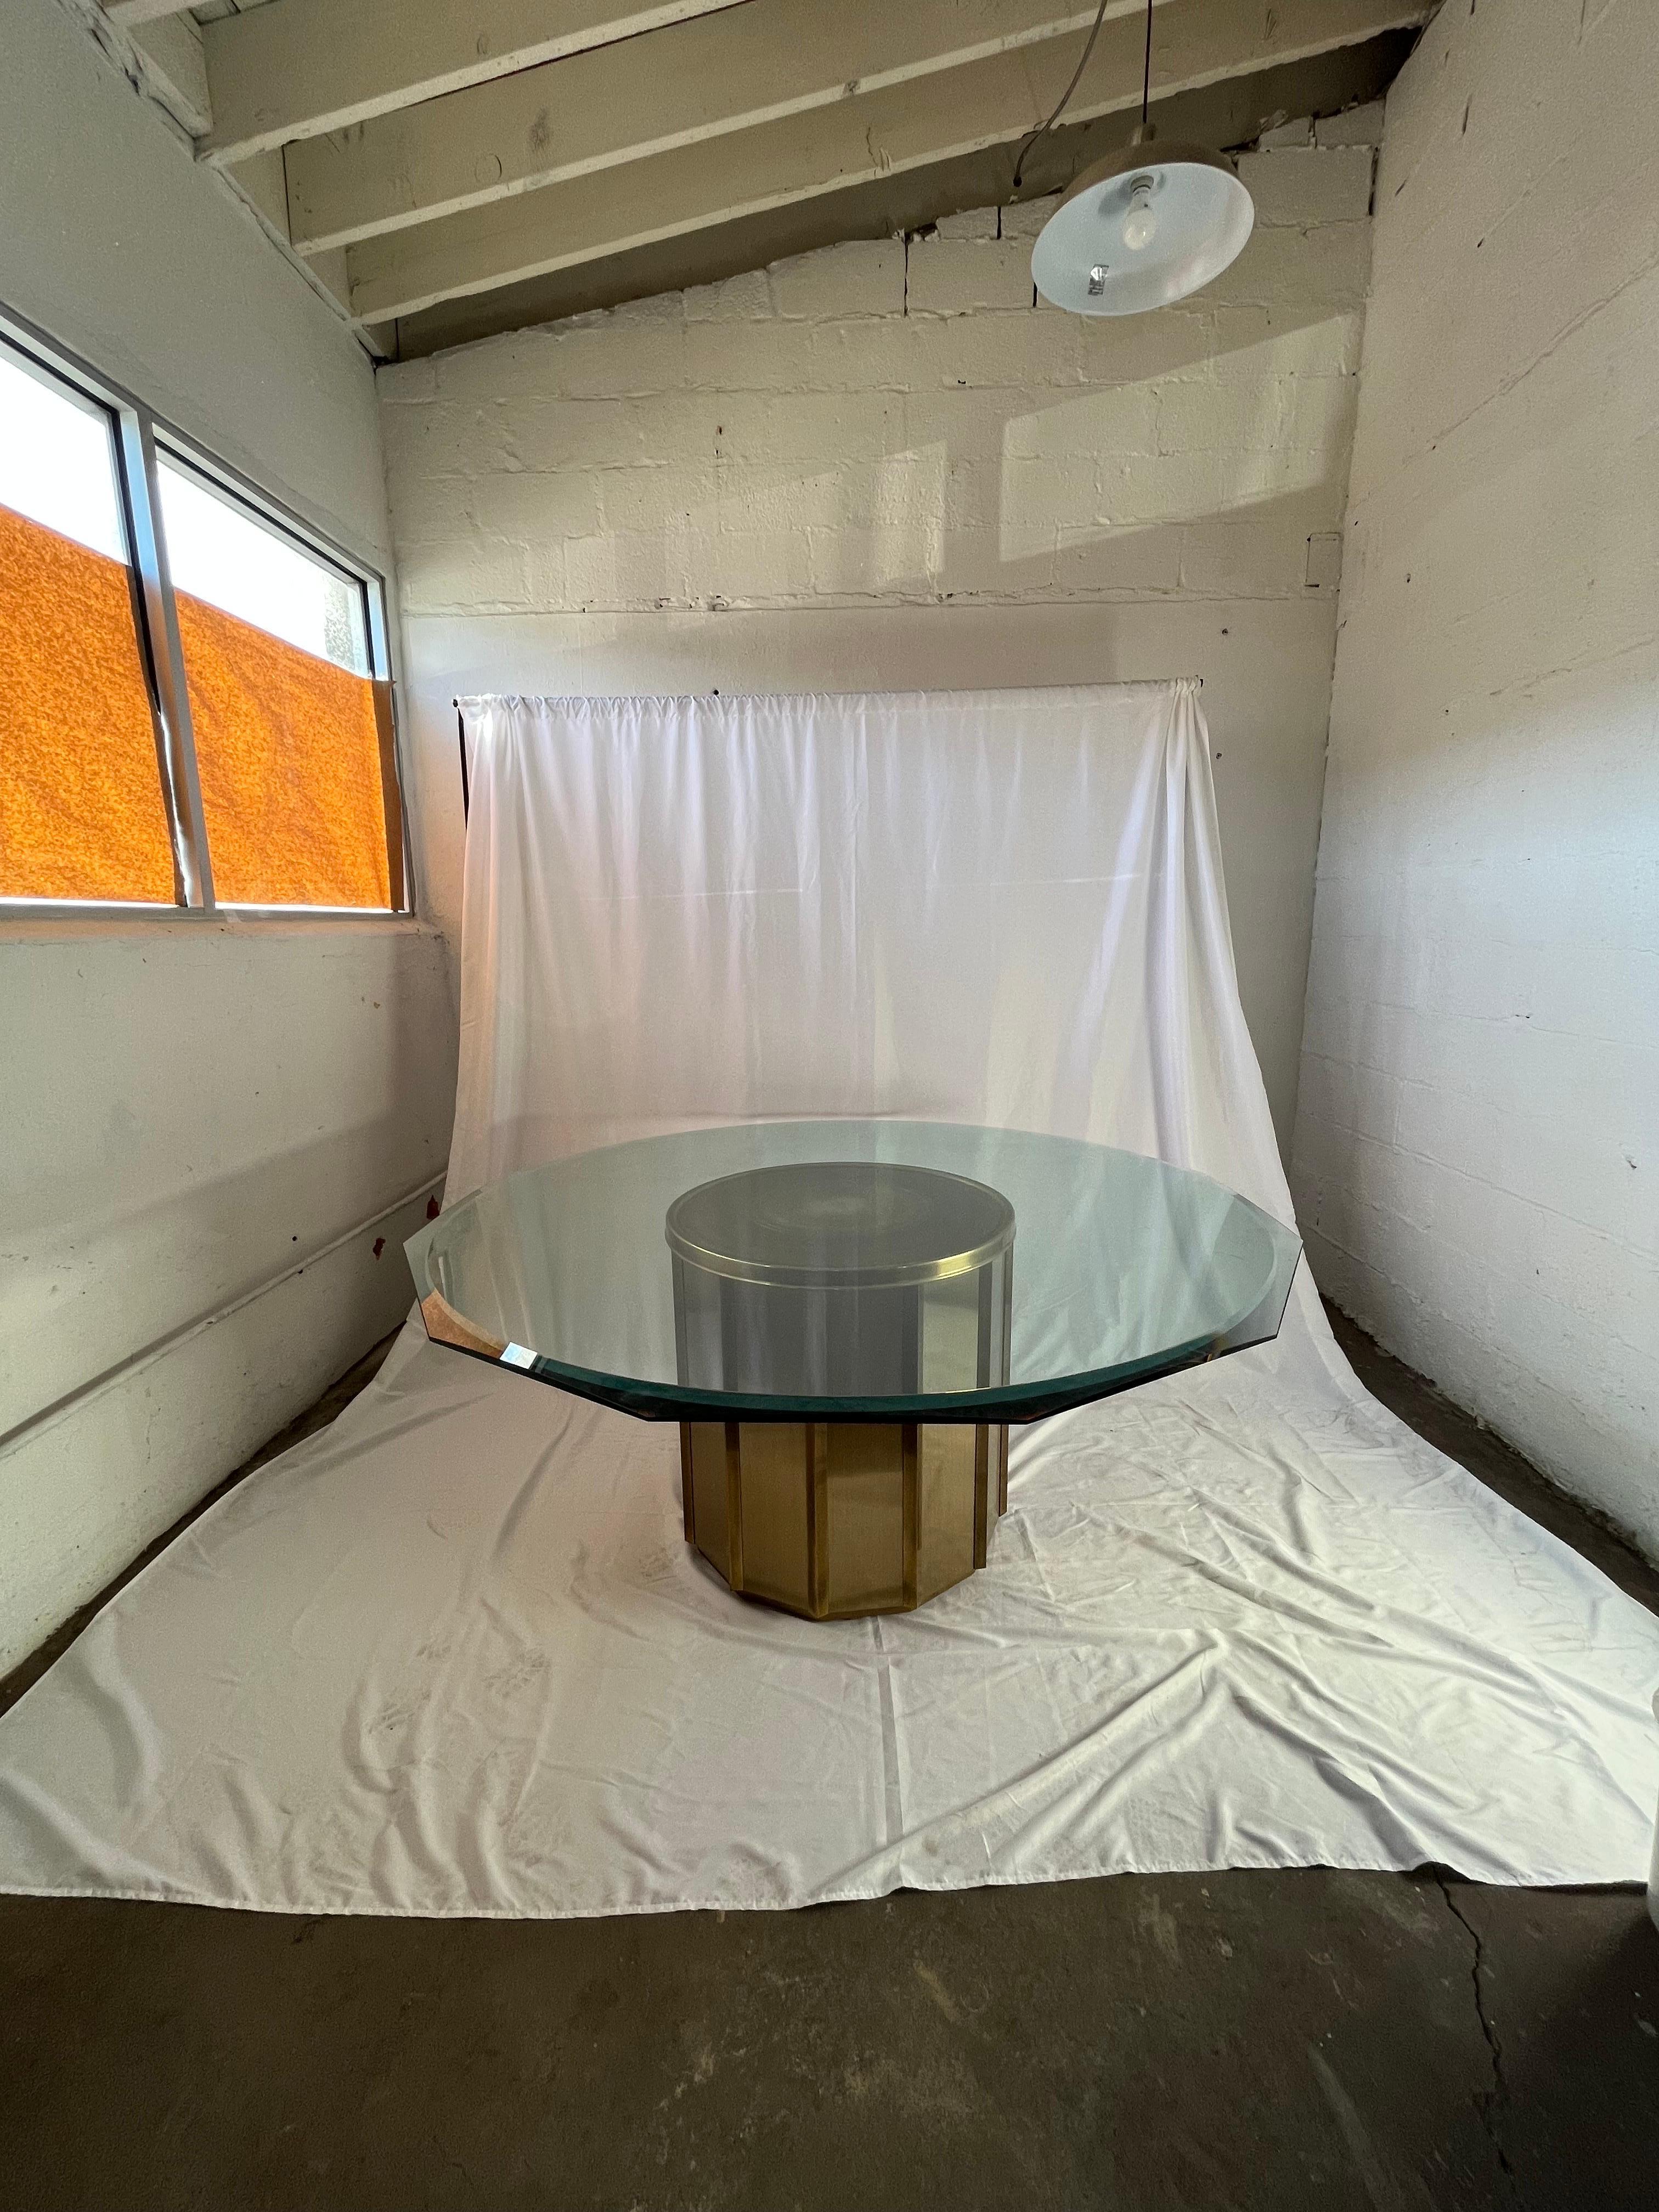 Base de table tambour en laiton magnifiquement conçue par William Doezema pour Mastercraft. Plan de travail en verre biseauté avec bords facettés. Il ferait également une excellente base de table pour l'entrée du foyer.  
En bordure de route vers